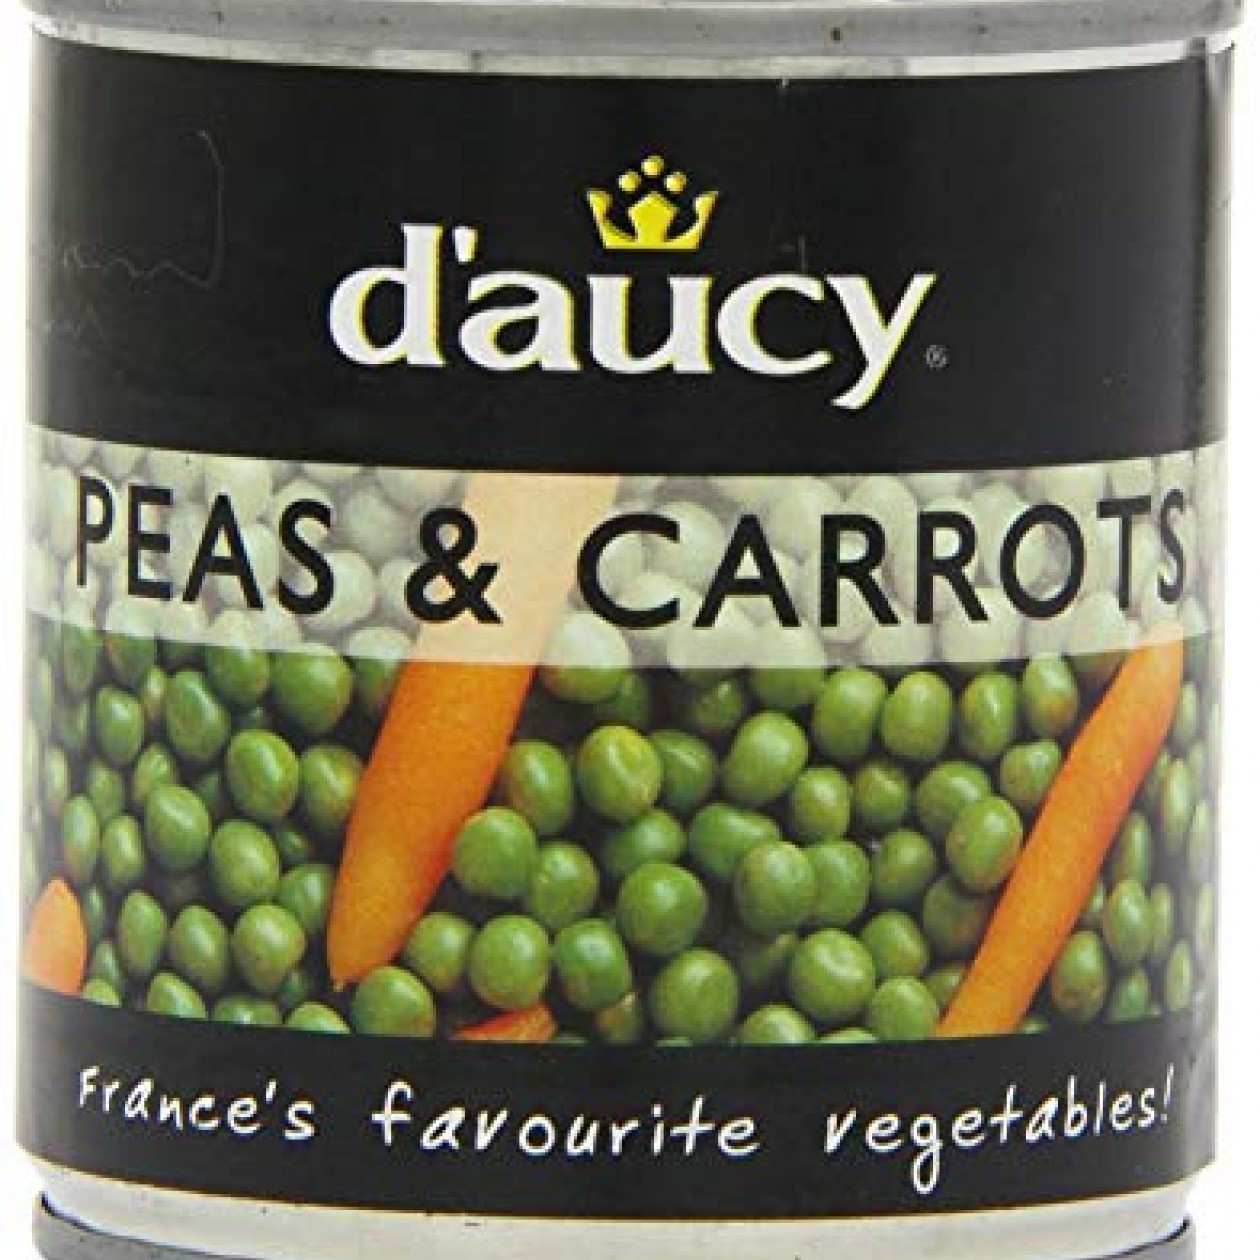 D'aucy Peas & Carrots 400g